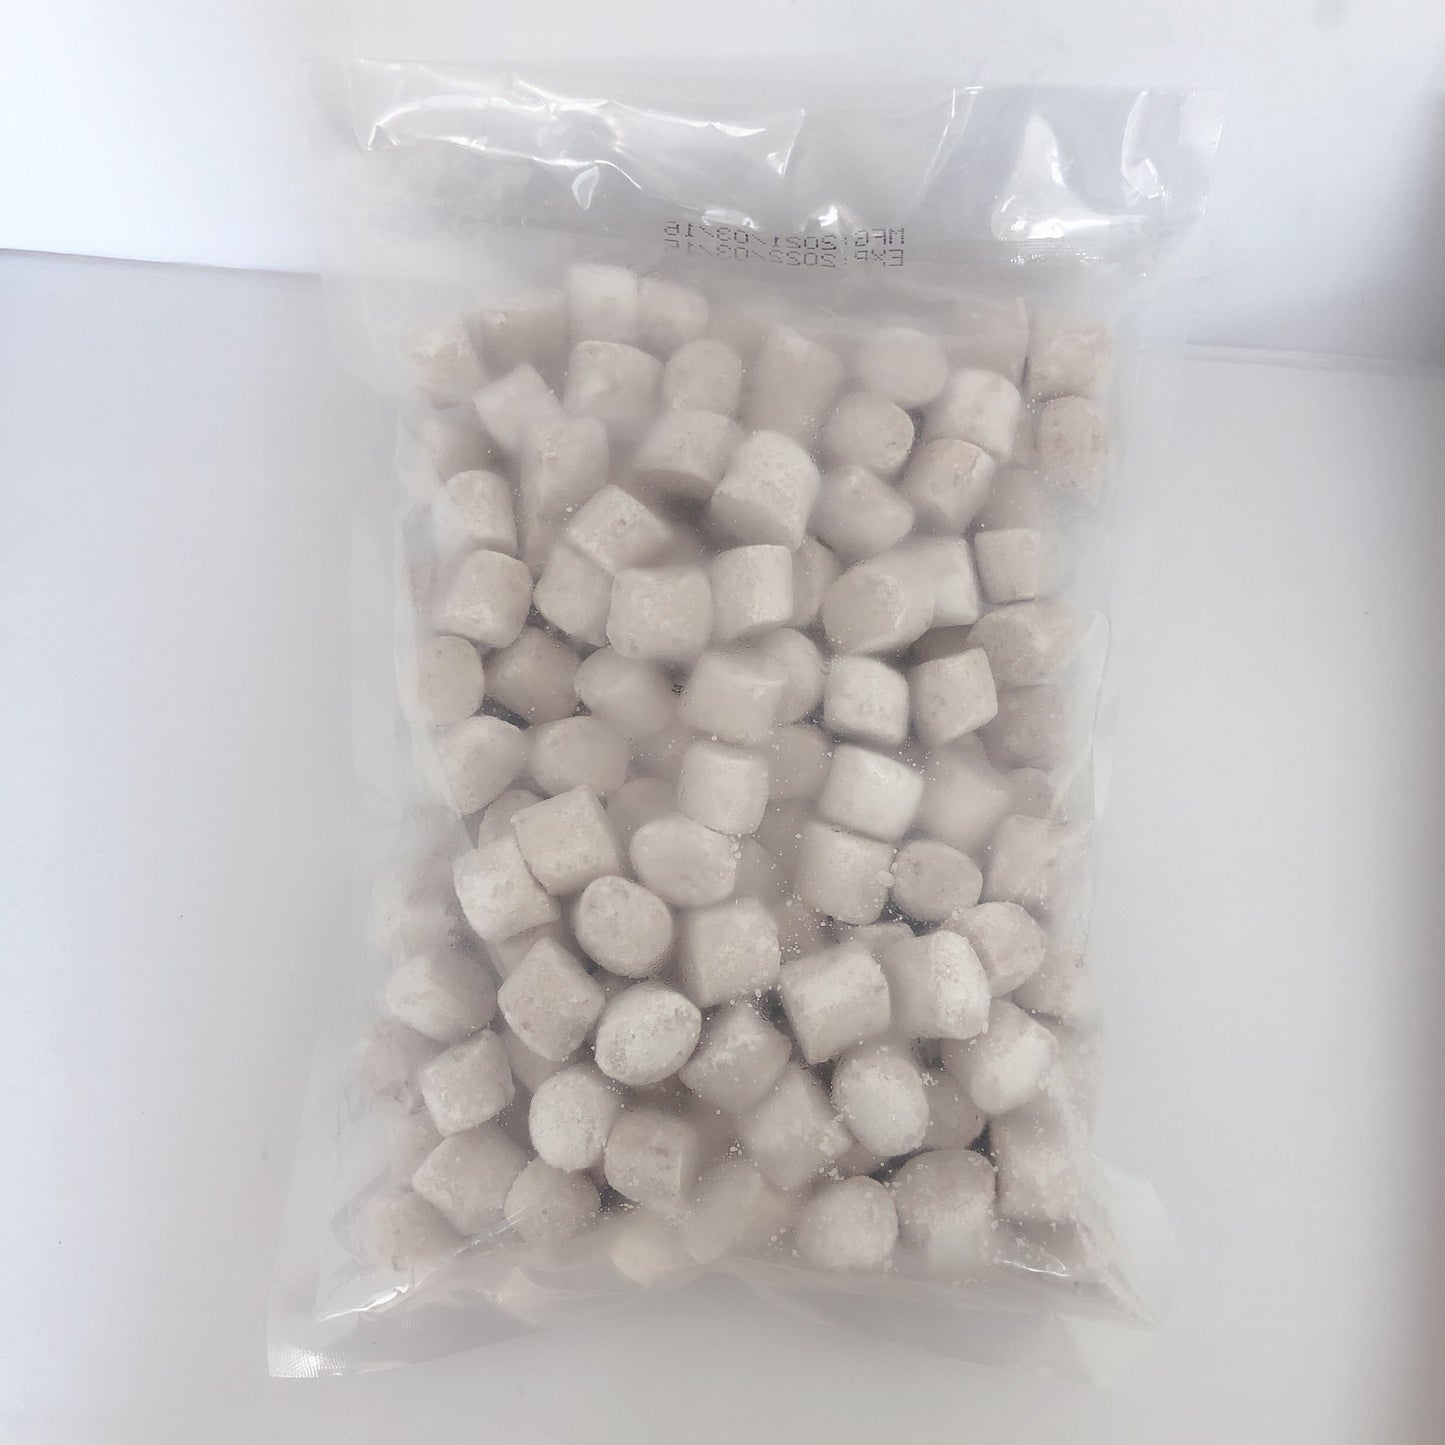 大q芋圓1kg 台湾産 冷凍品